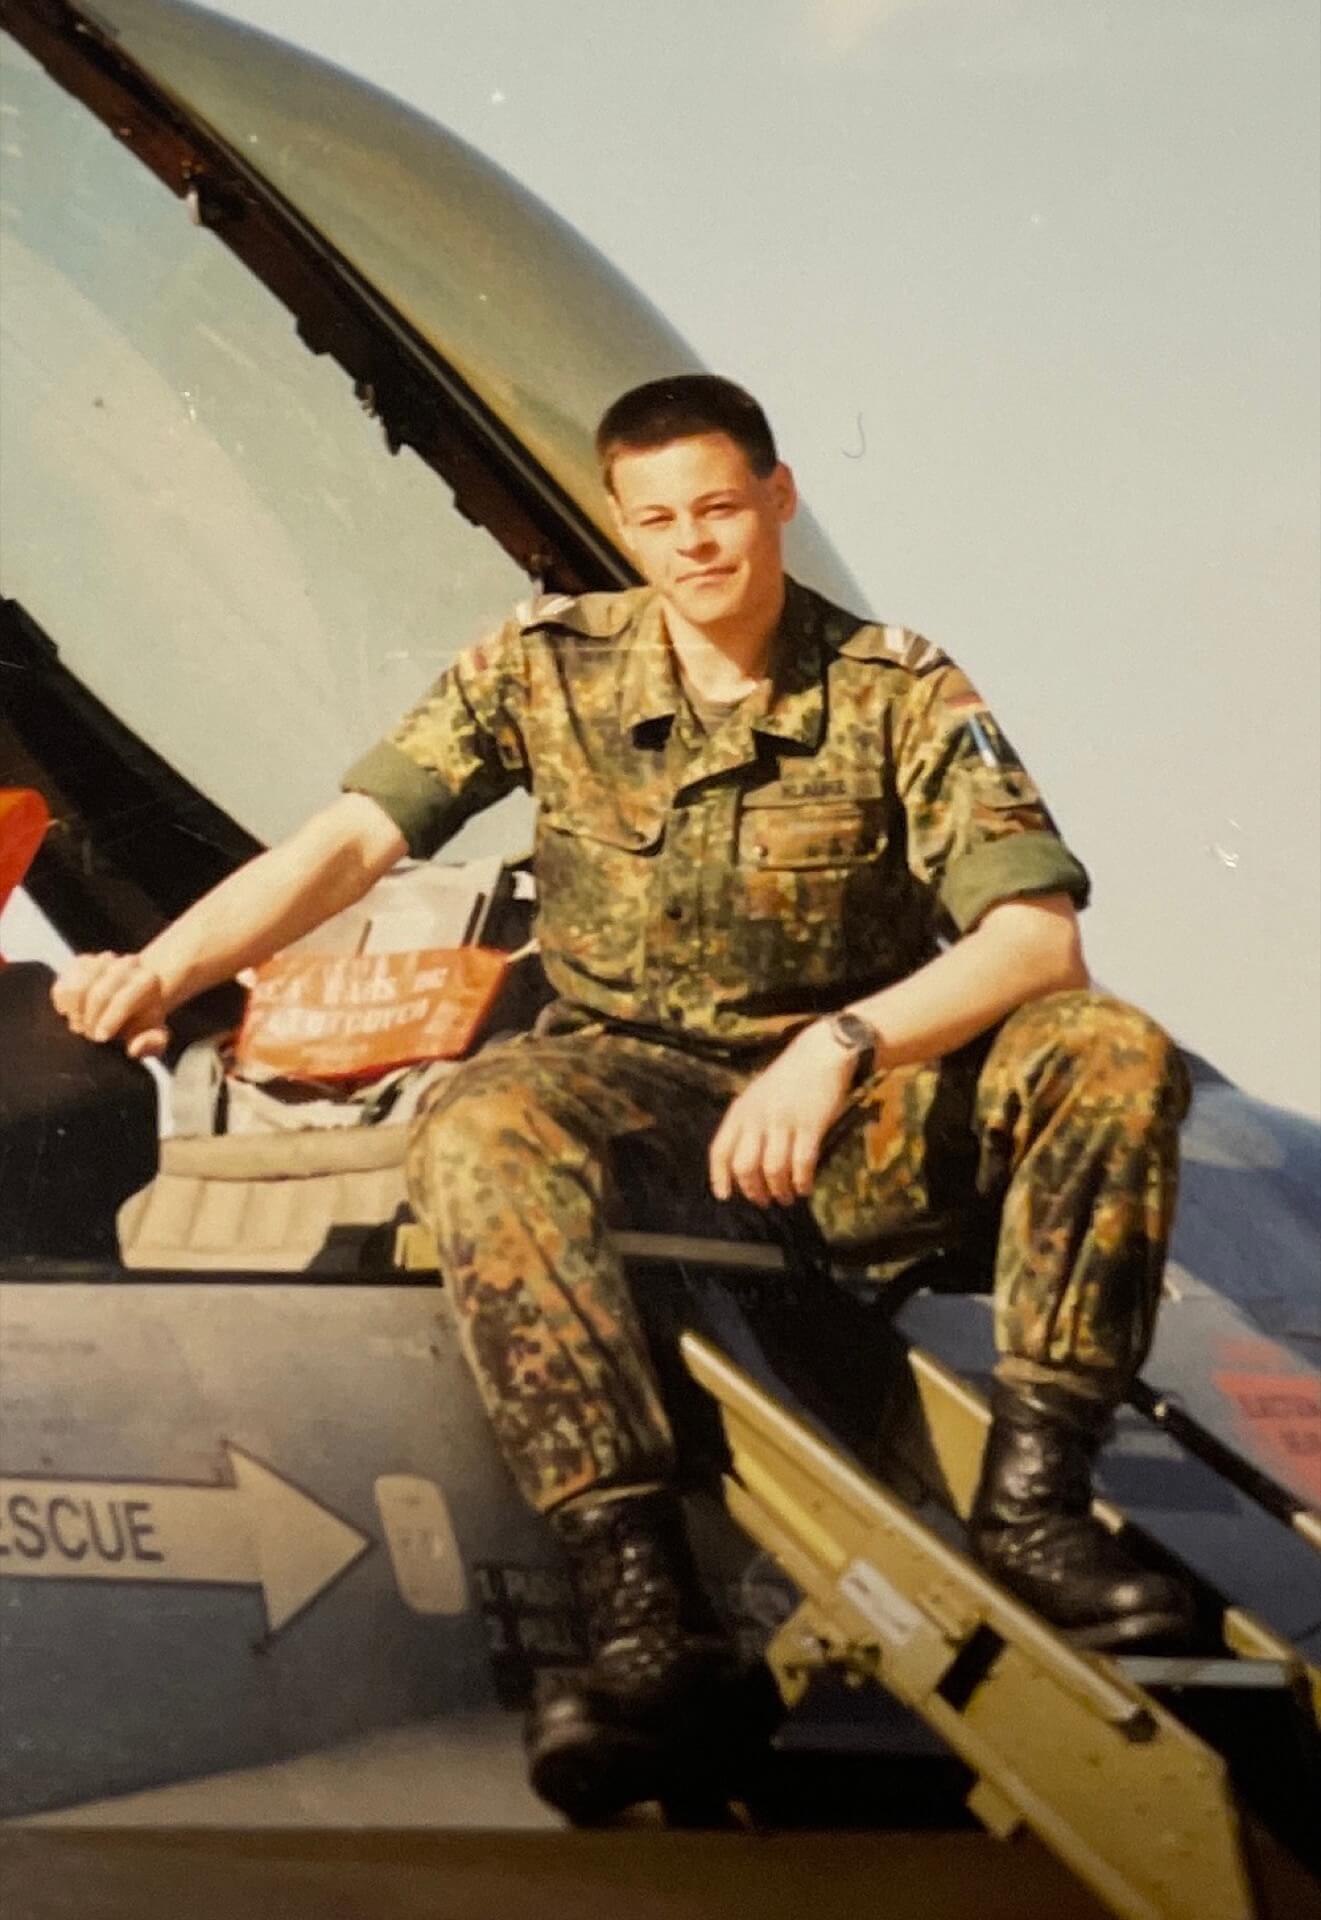 Patrick im bzw. am Cockpit (Wehrdienst bei der Bundeswehr 1999)